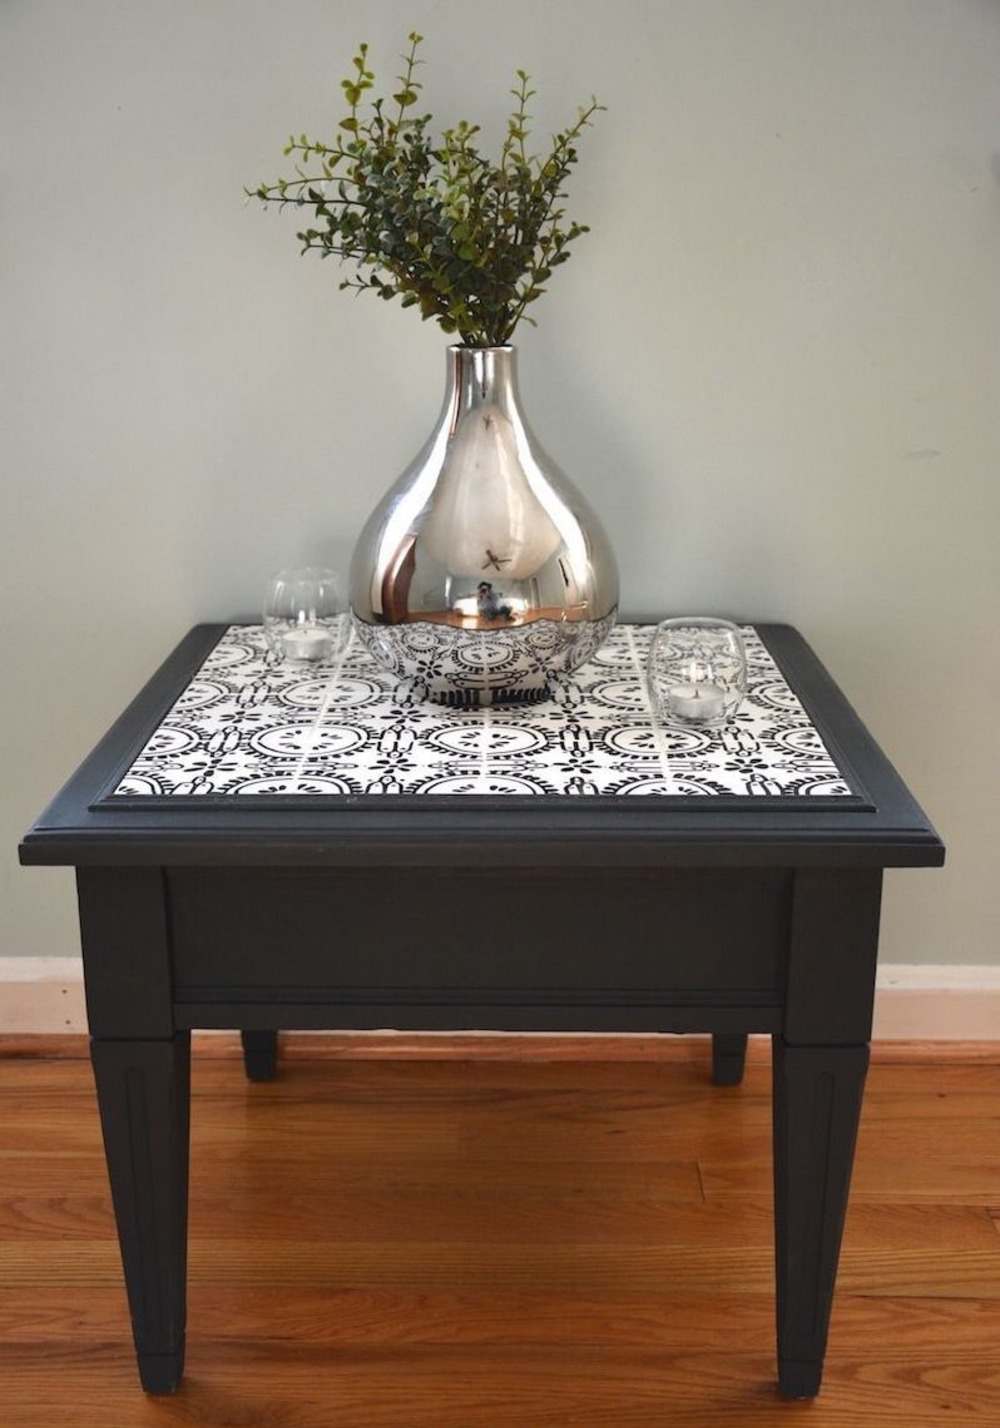 Använd det svarta träbordet med målade vita plattor som ett kaklat bord eller sidobord